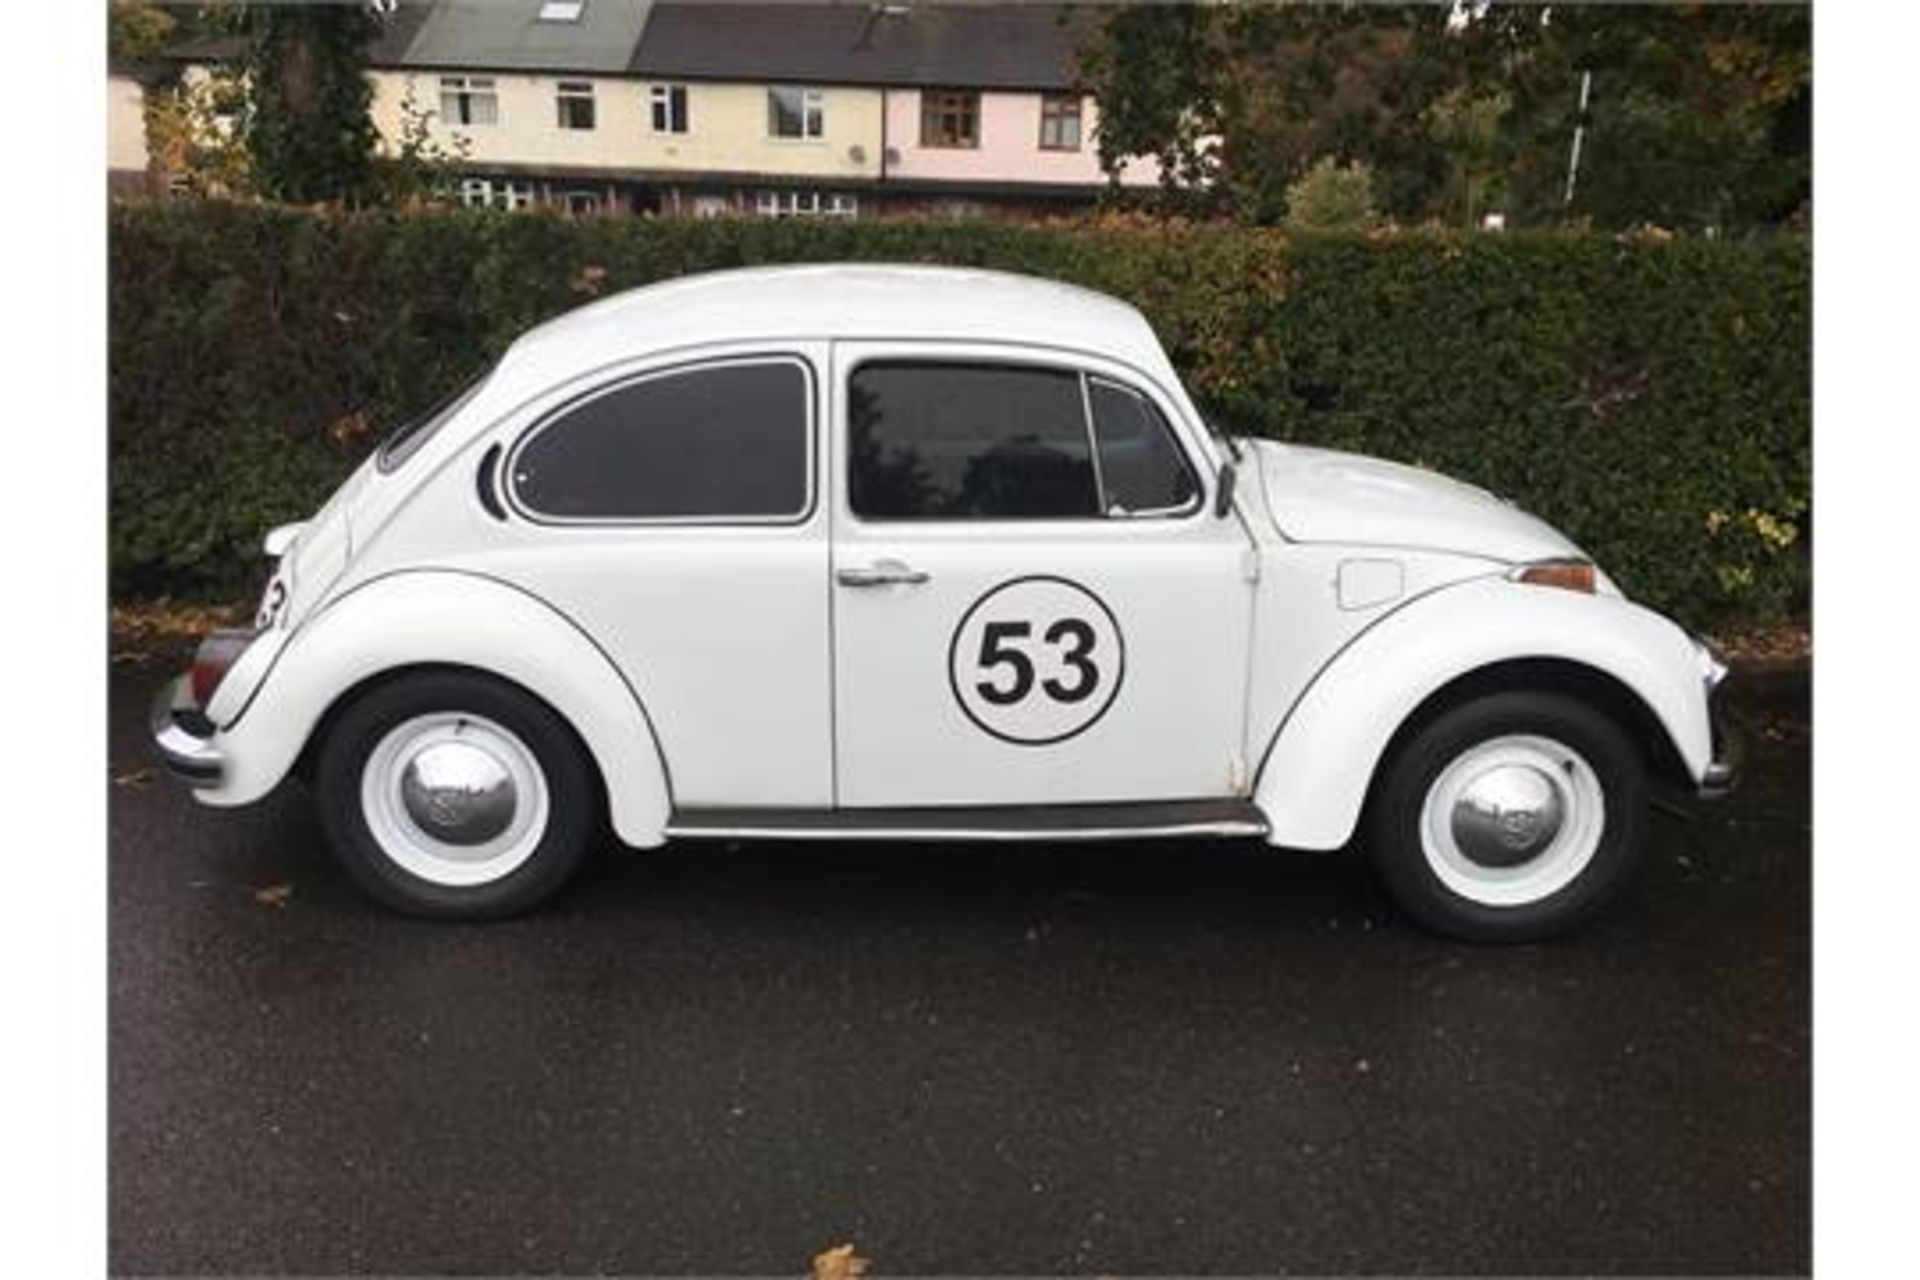 1974 VW Beetle - Herbie - Image 2 of 9